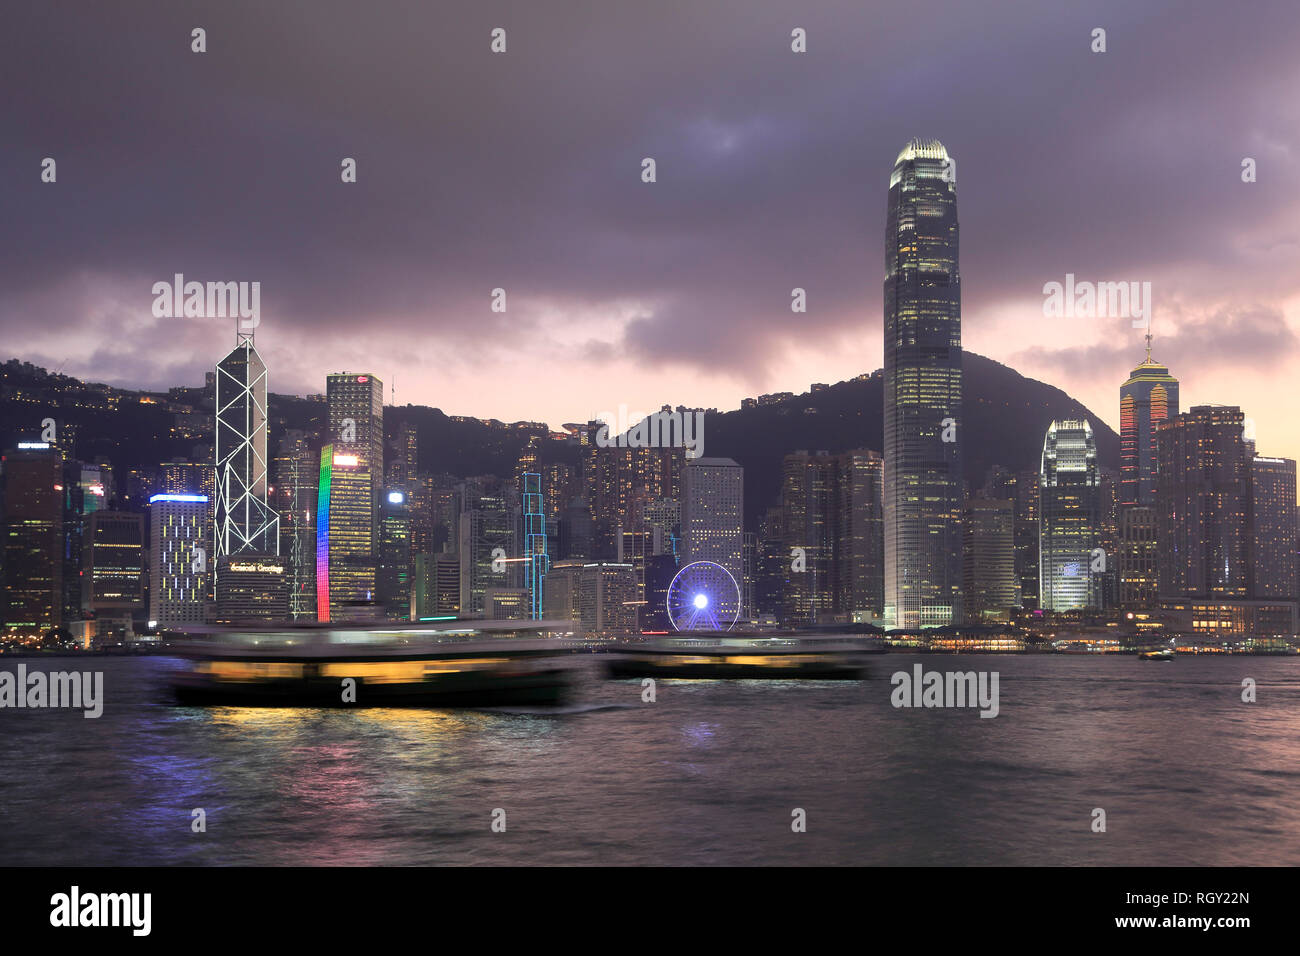 Star Ferry, Skyline, centre financier international (SFI), le port de Victoria, la nuit, l'île de Hong Kong, Hong Kong, Chine Asie Banque D'Images